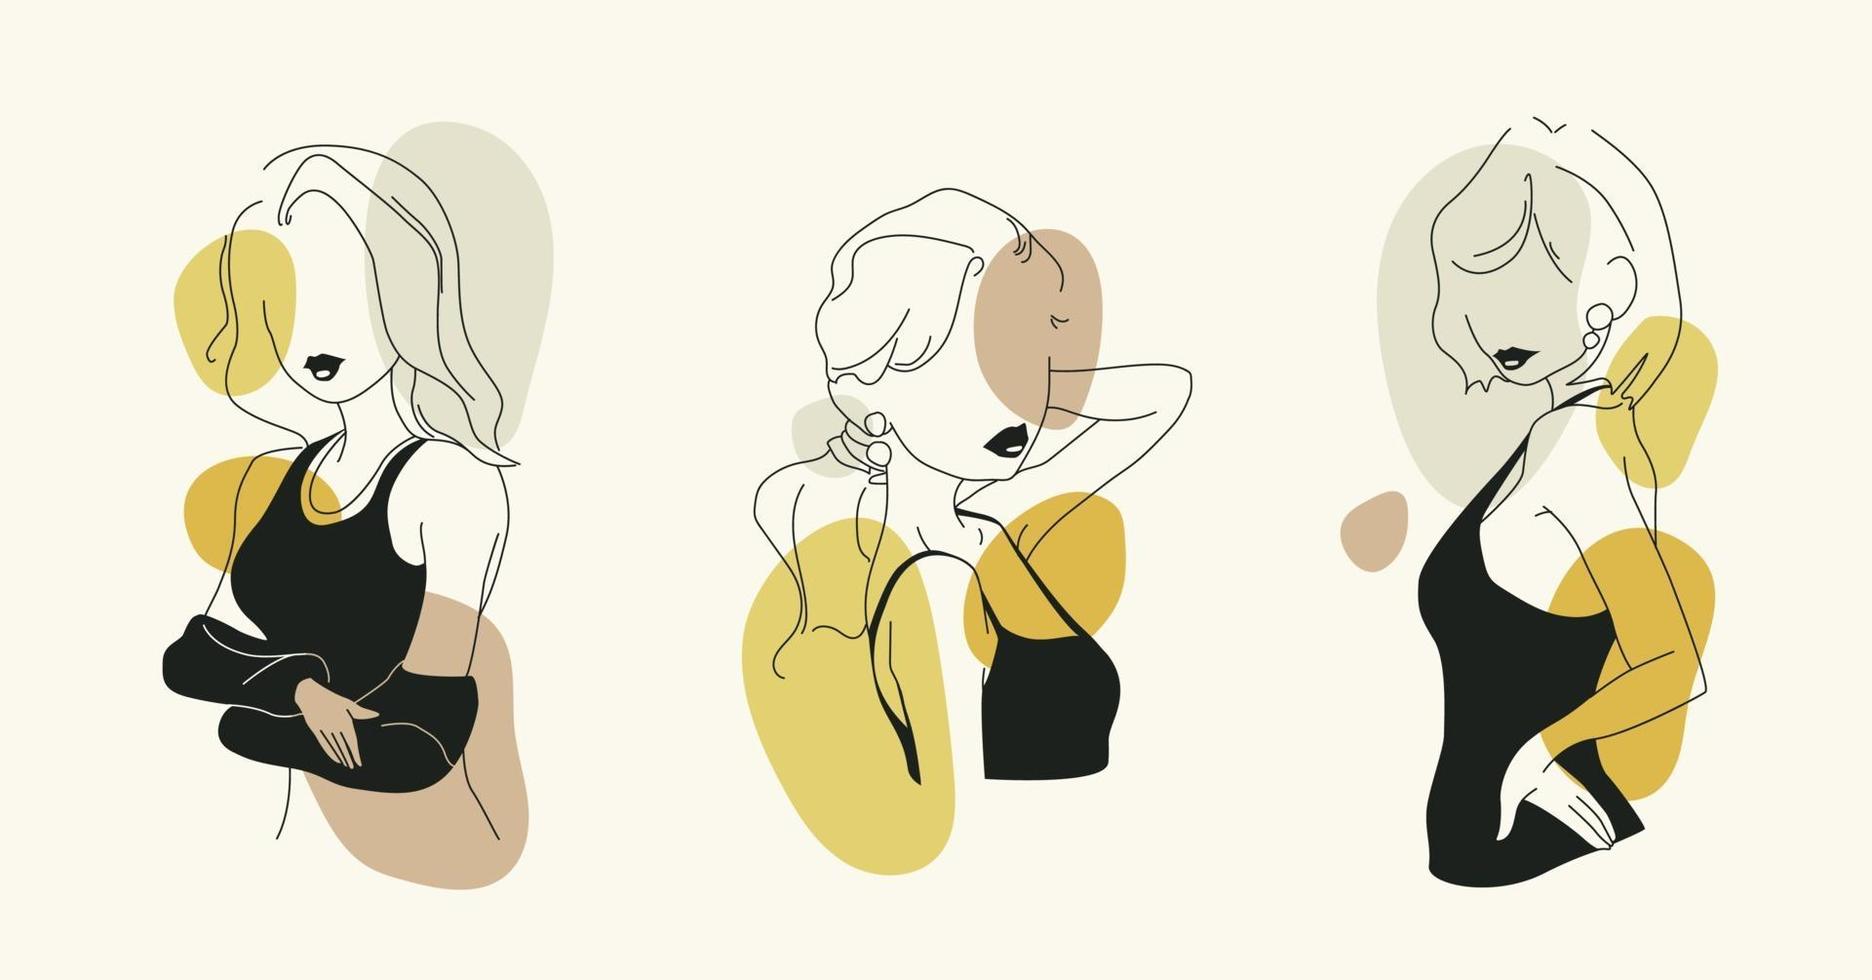 conjunto de chicas sin rostro. ilustraciones de moda. vector